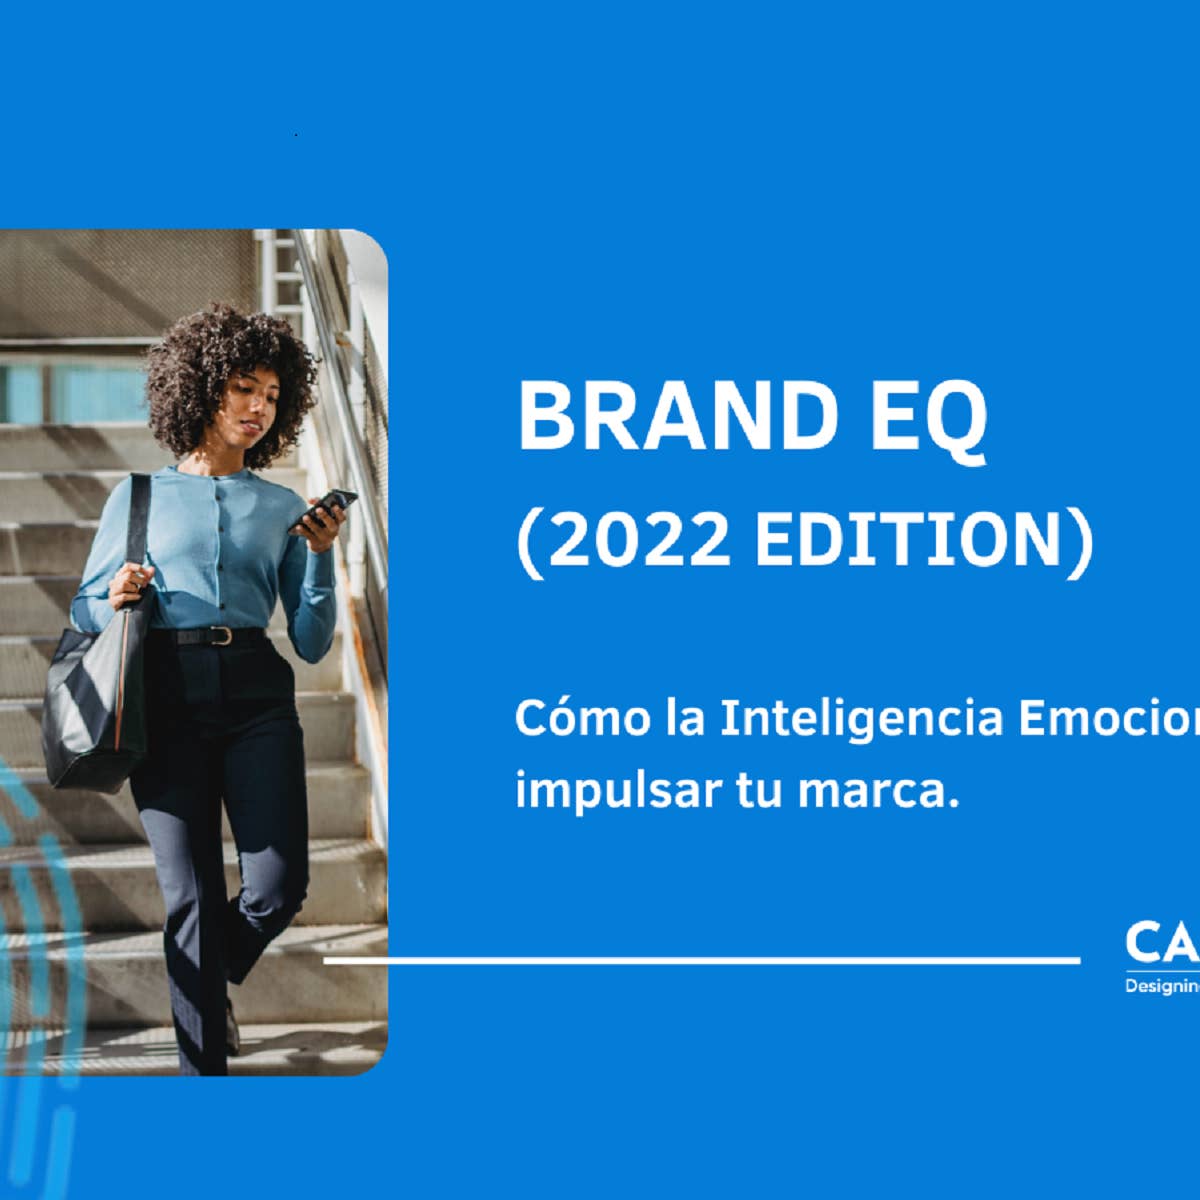 BRAND EQ 2022: cómo la inteligencia emocional puede impulsar tu marca